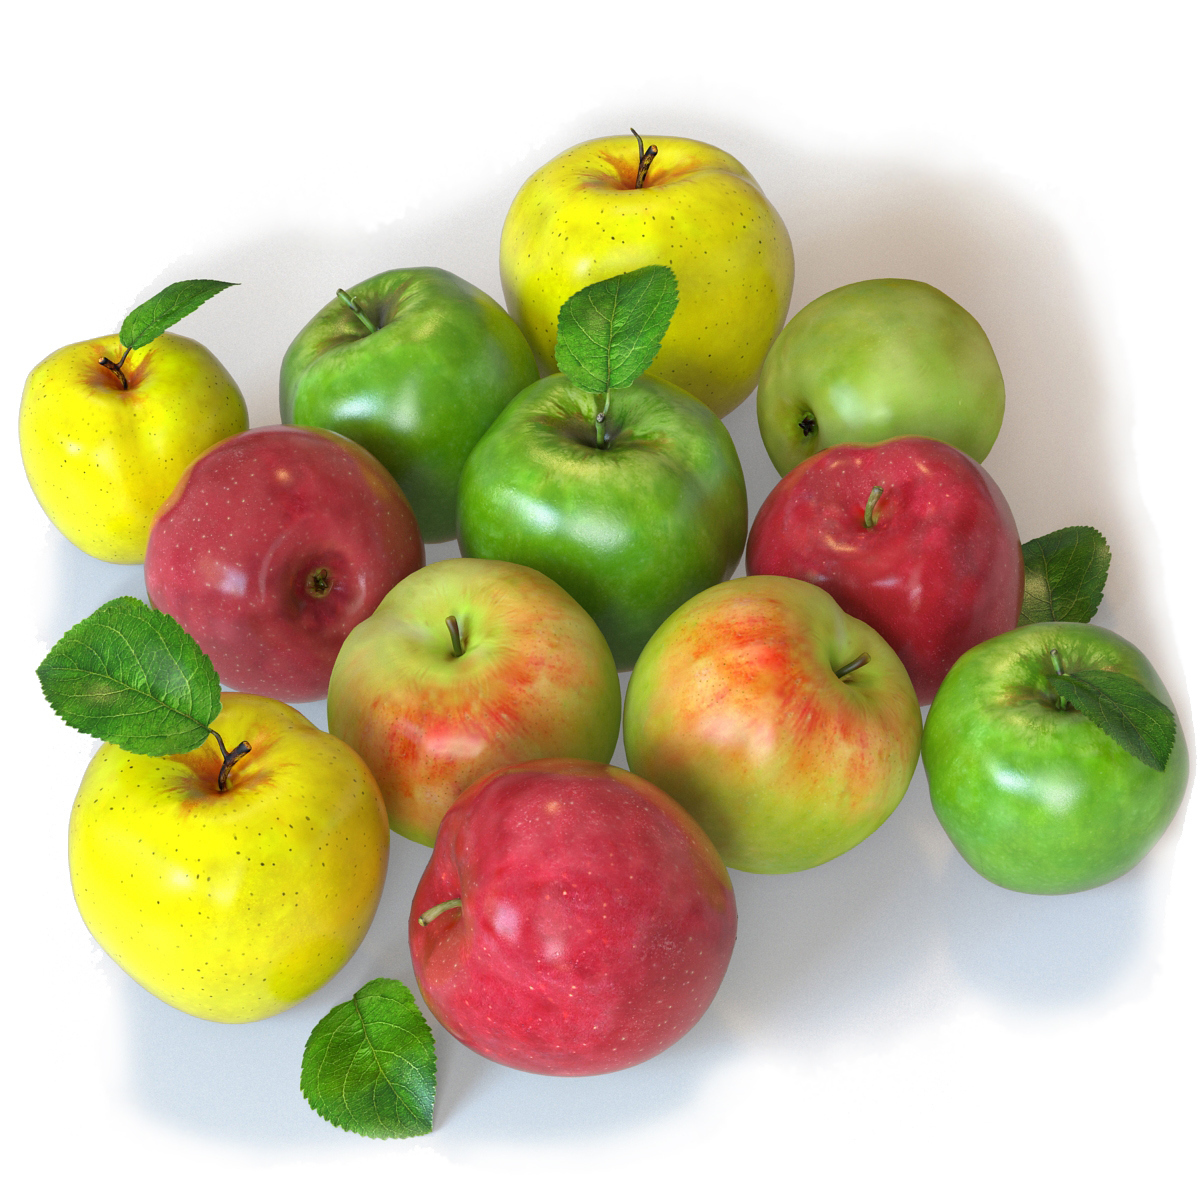 Apple Fruit: Apples Fruit 3d Models for Download - 24$ 